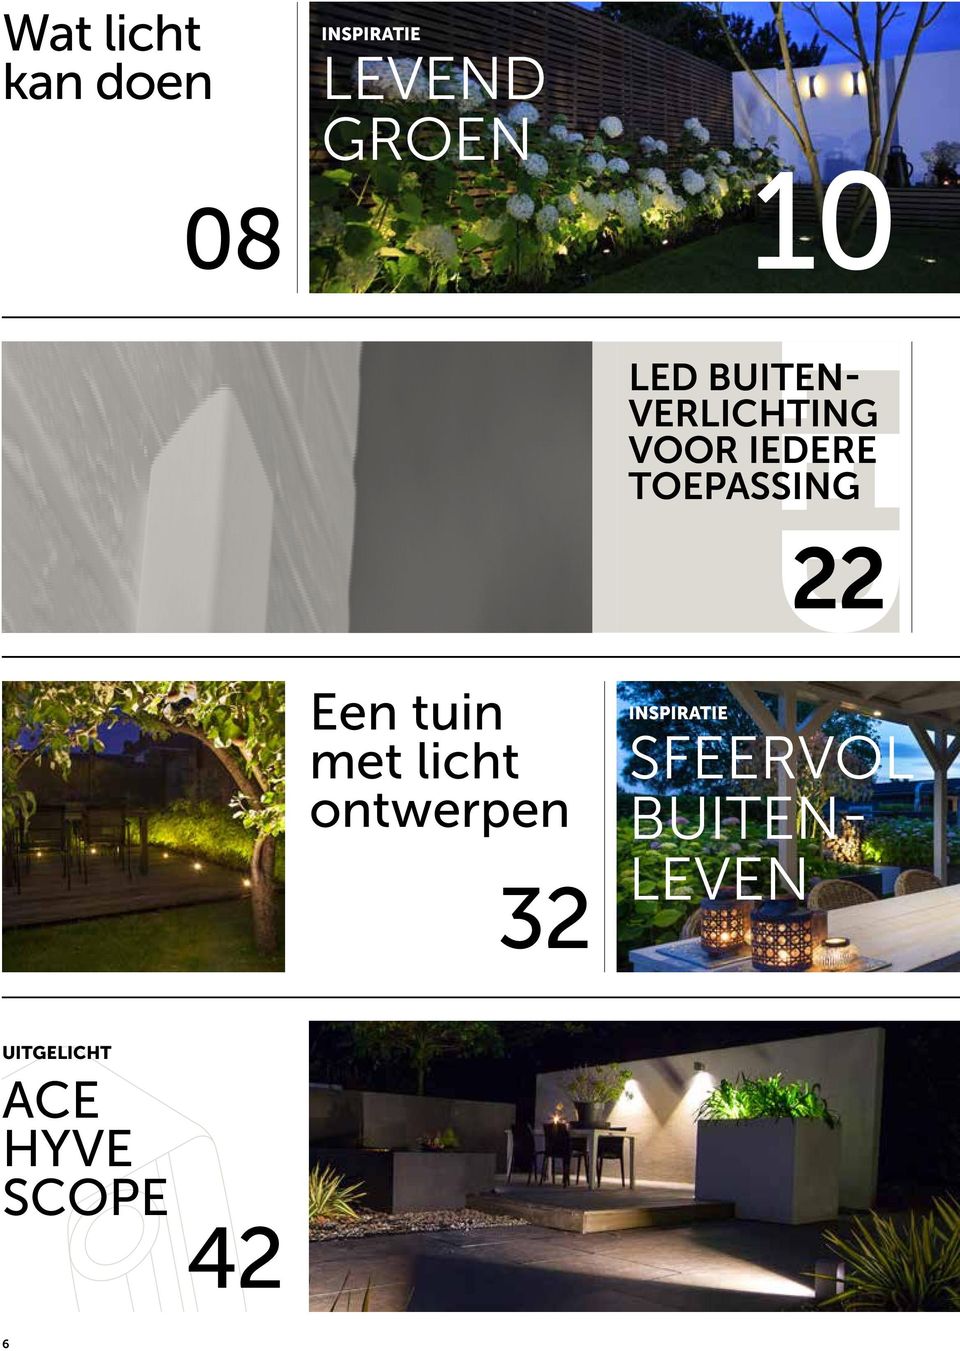 22 Een tuin met licht ontwerpen 32 INSPIRATIE